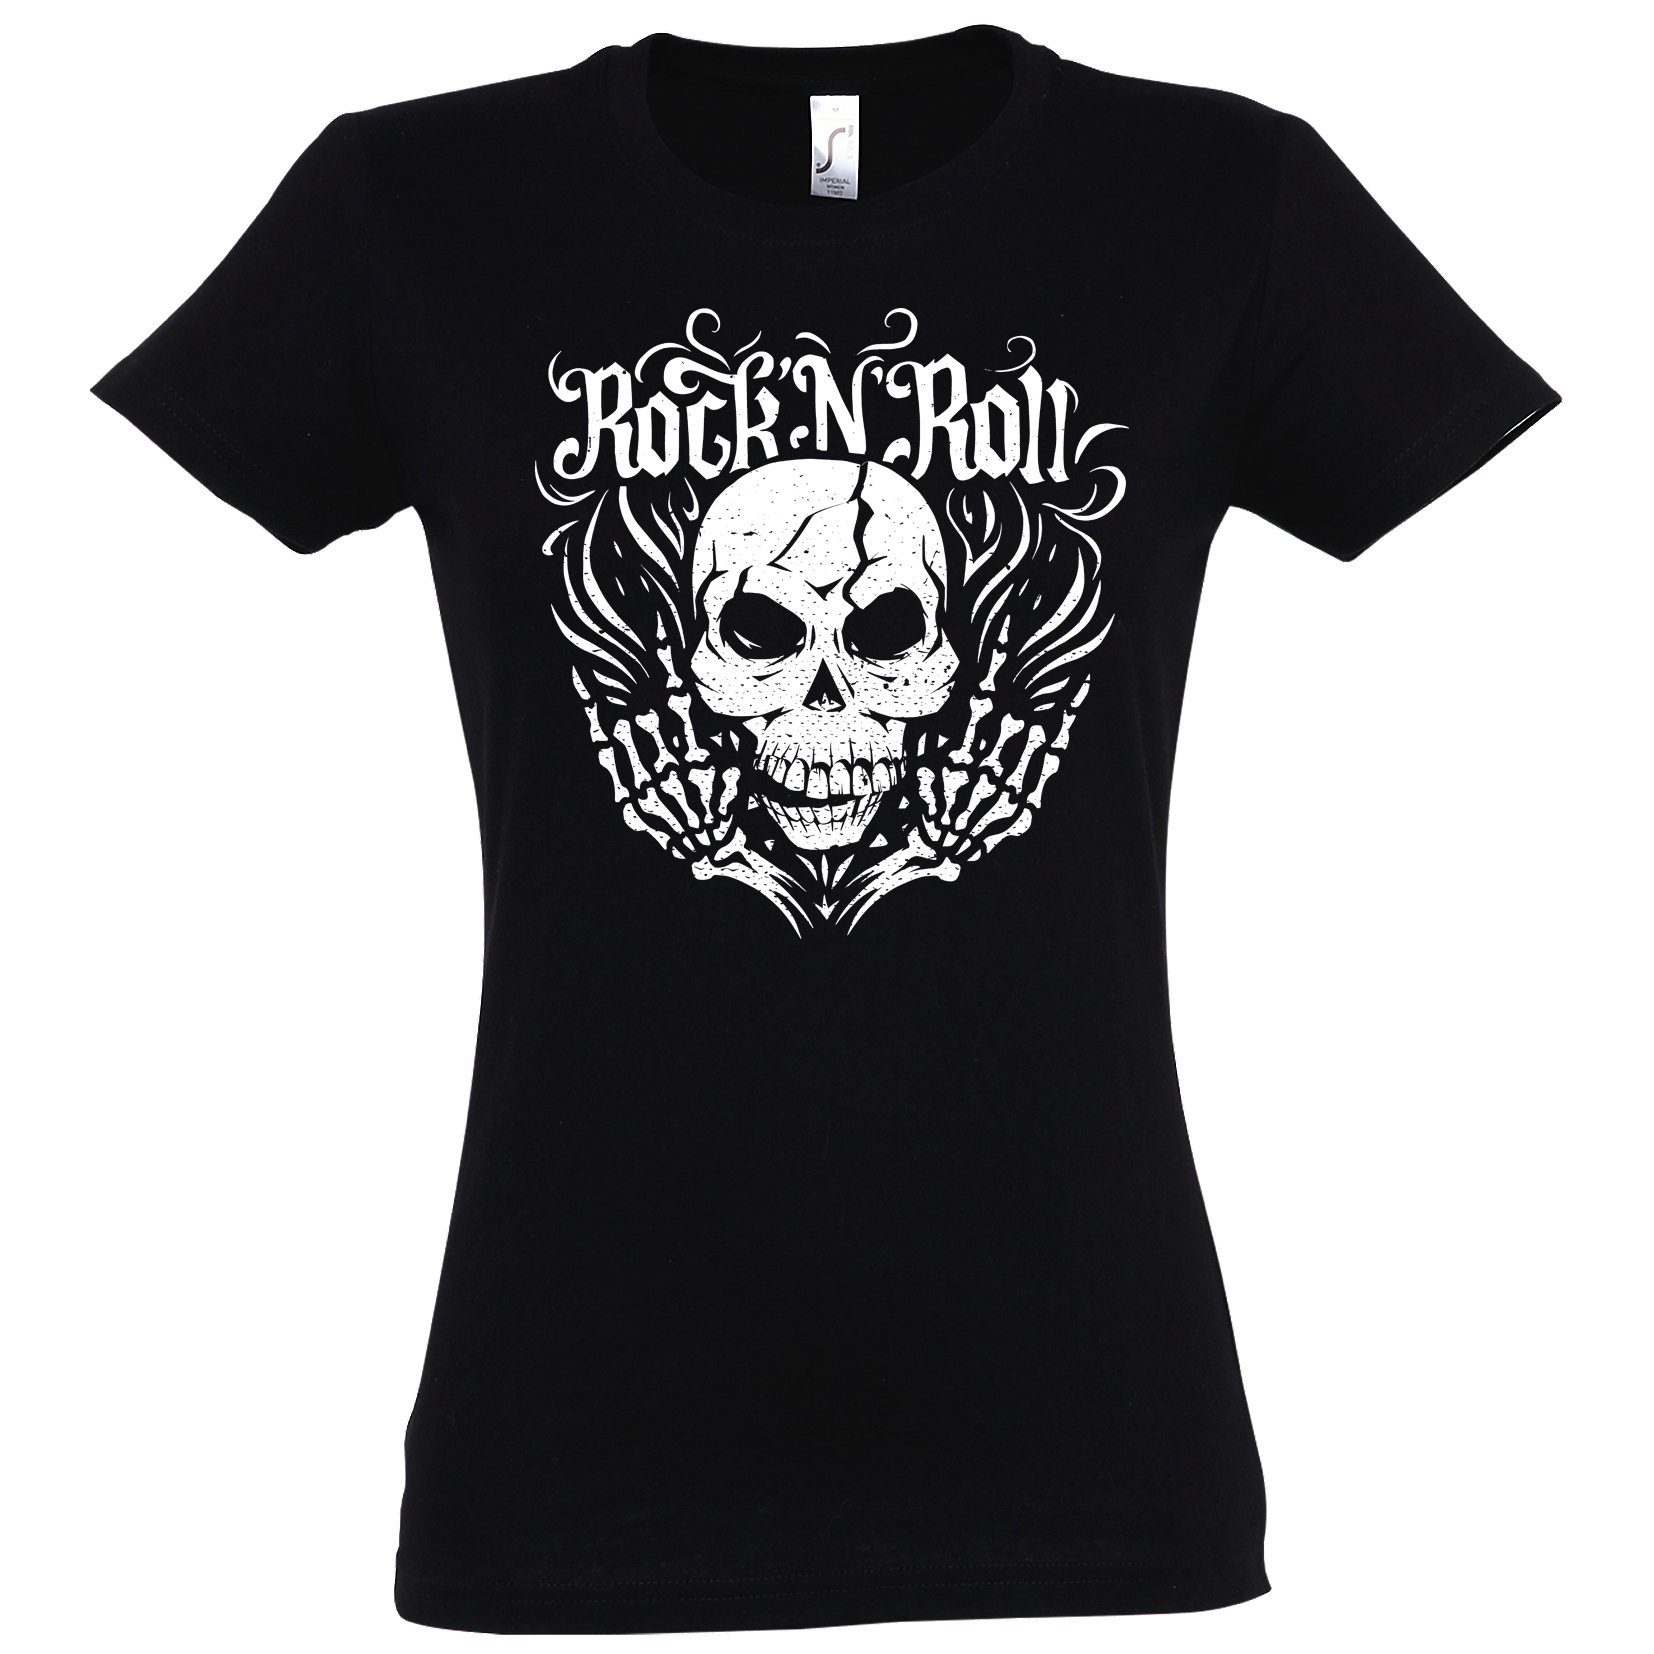 Print Skull Roll T-Shirt Rock modischem and Designz Youth Mit Shirt Schwarz Fun-Look Damen im